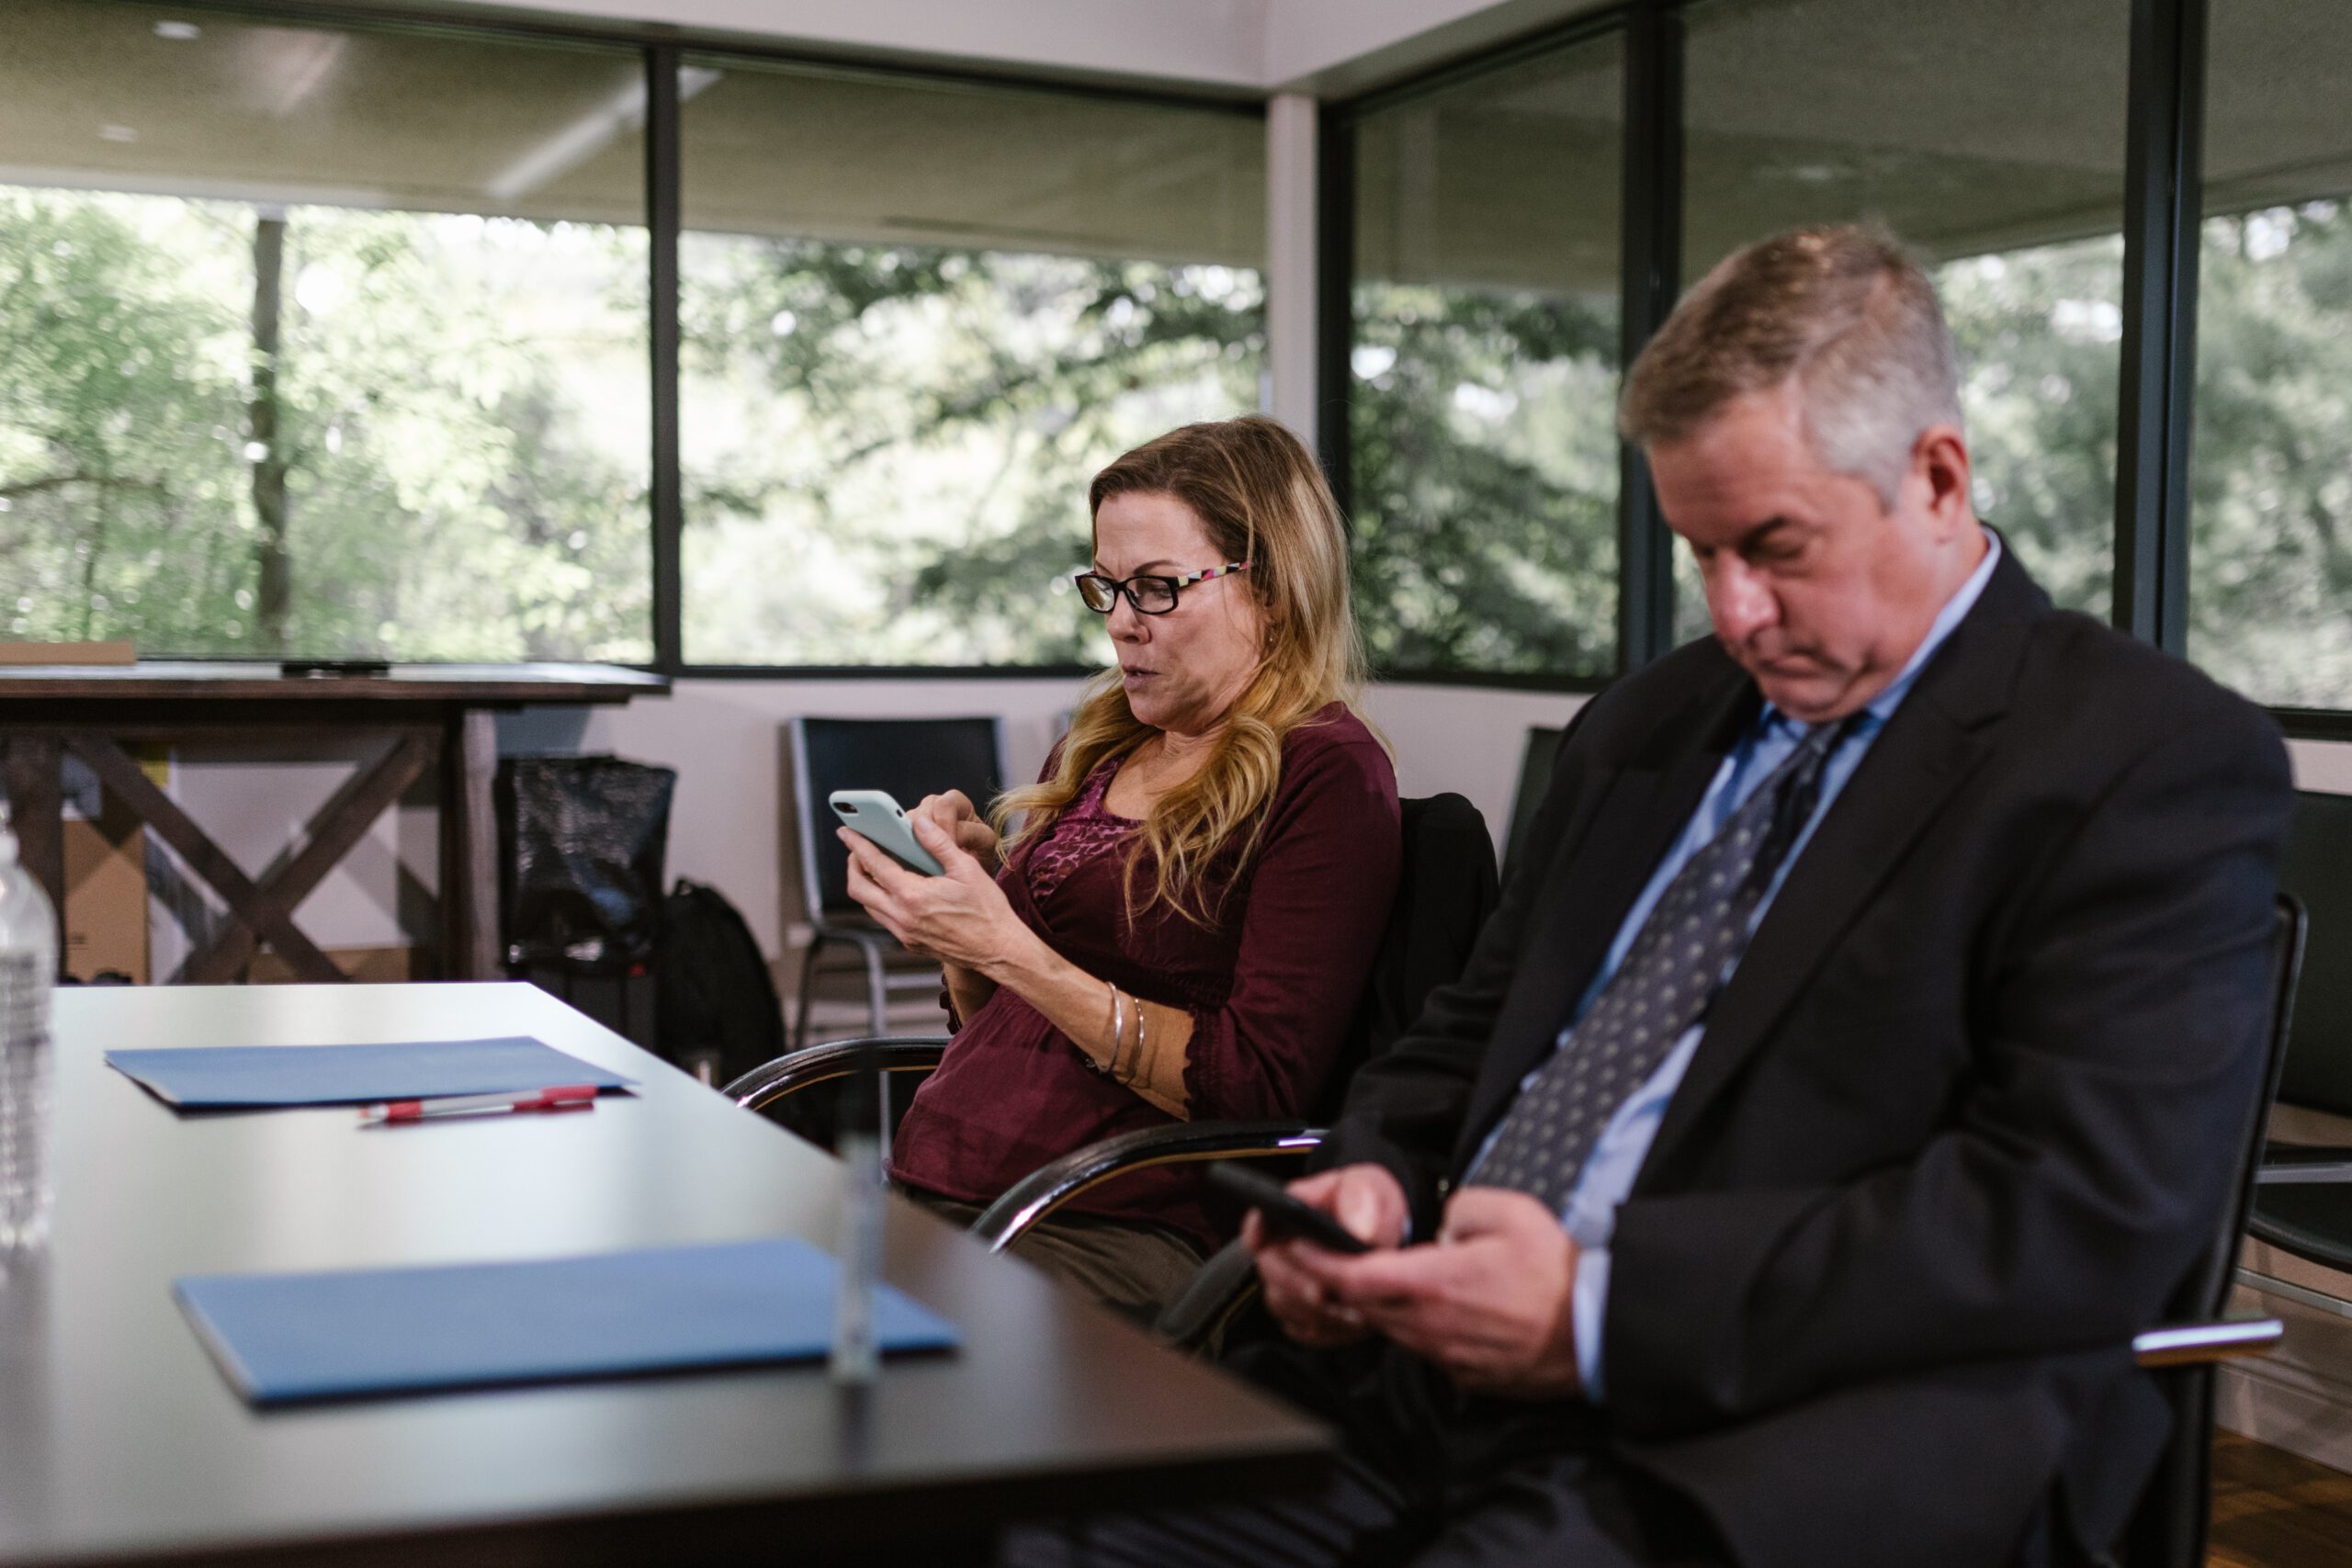 Dwoje ludzi z rady nadzorczej w firmie siedzący przy stole i bawiący się telefonami komórkowymi